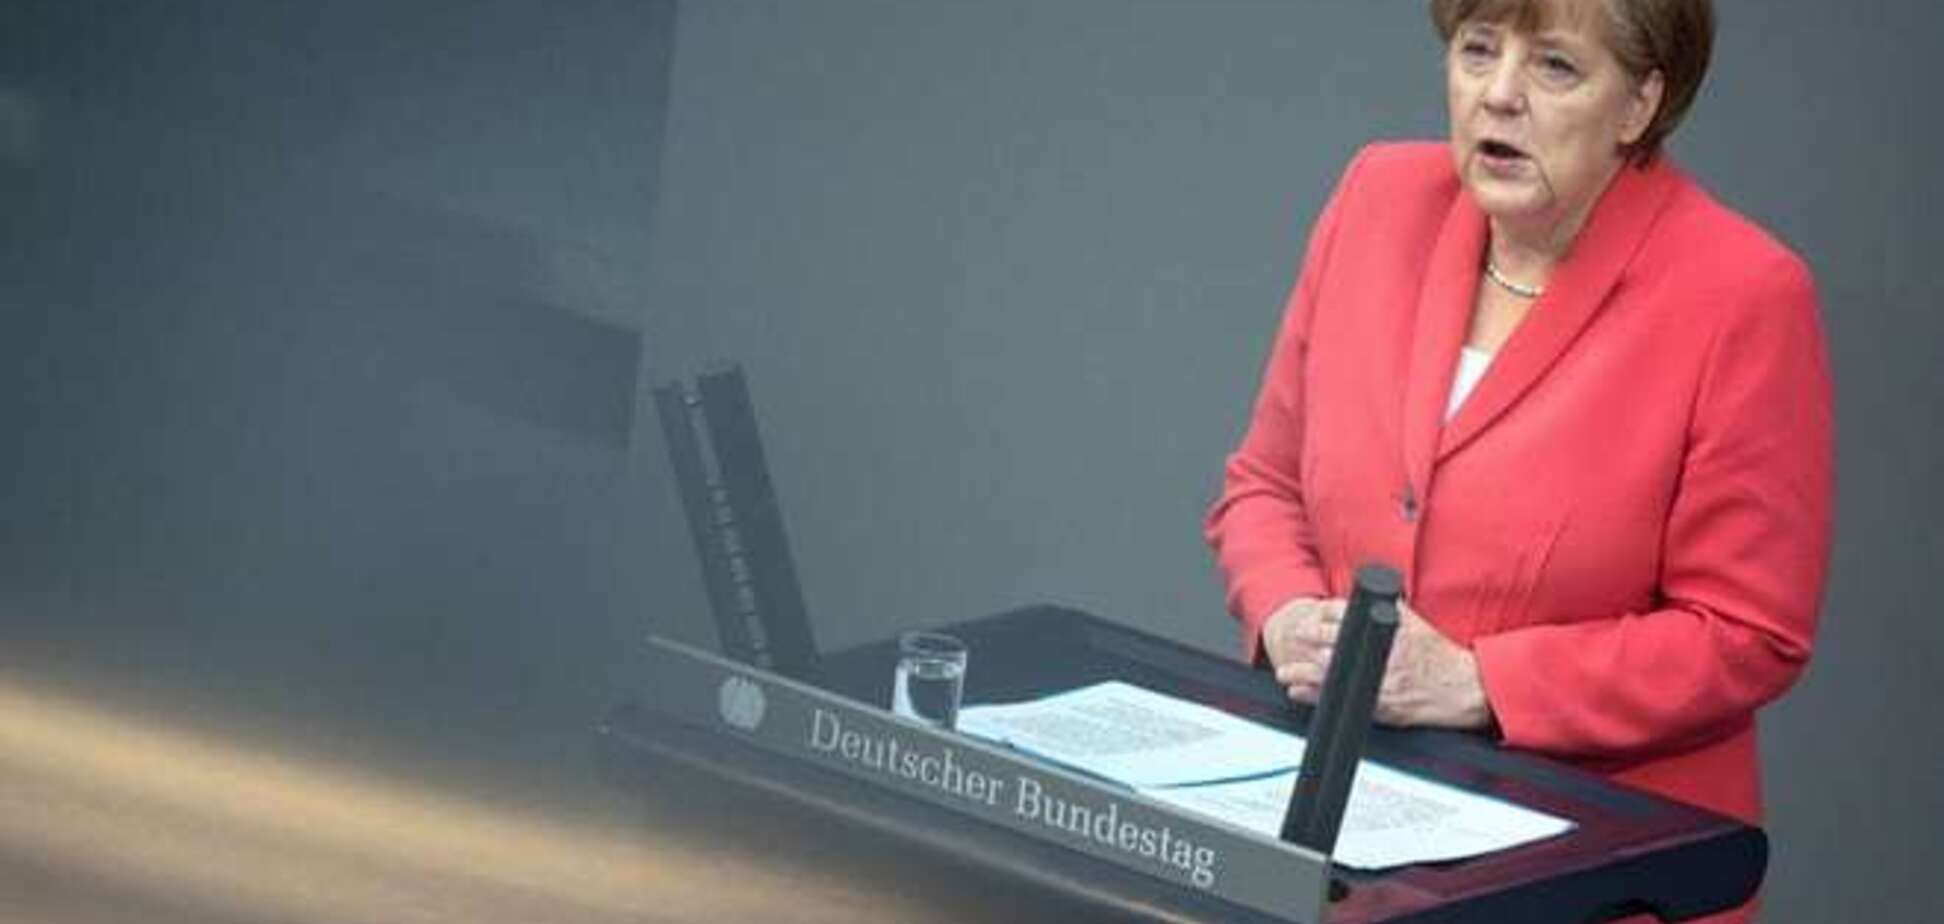 Меркель против списания долгов Греции